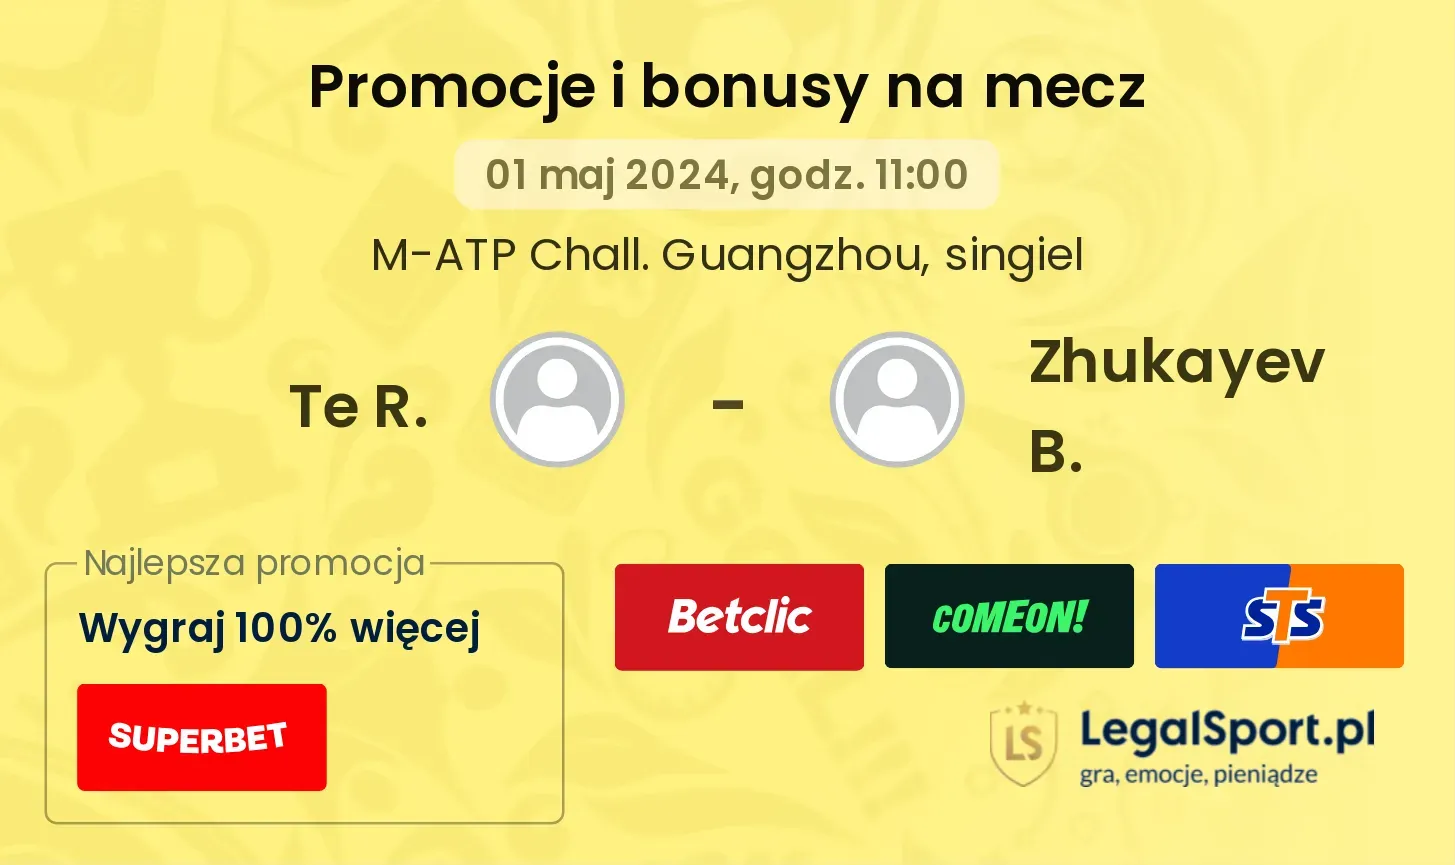 Te R. - Zhukayev B. promocje bonusy na mecz